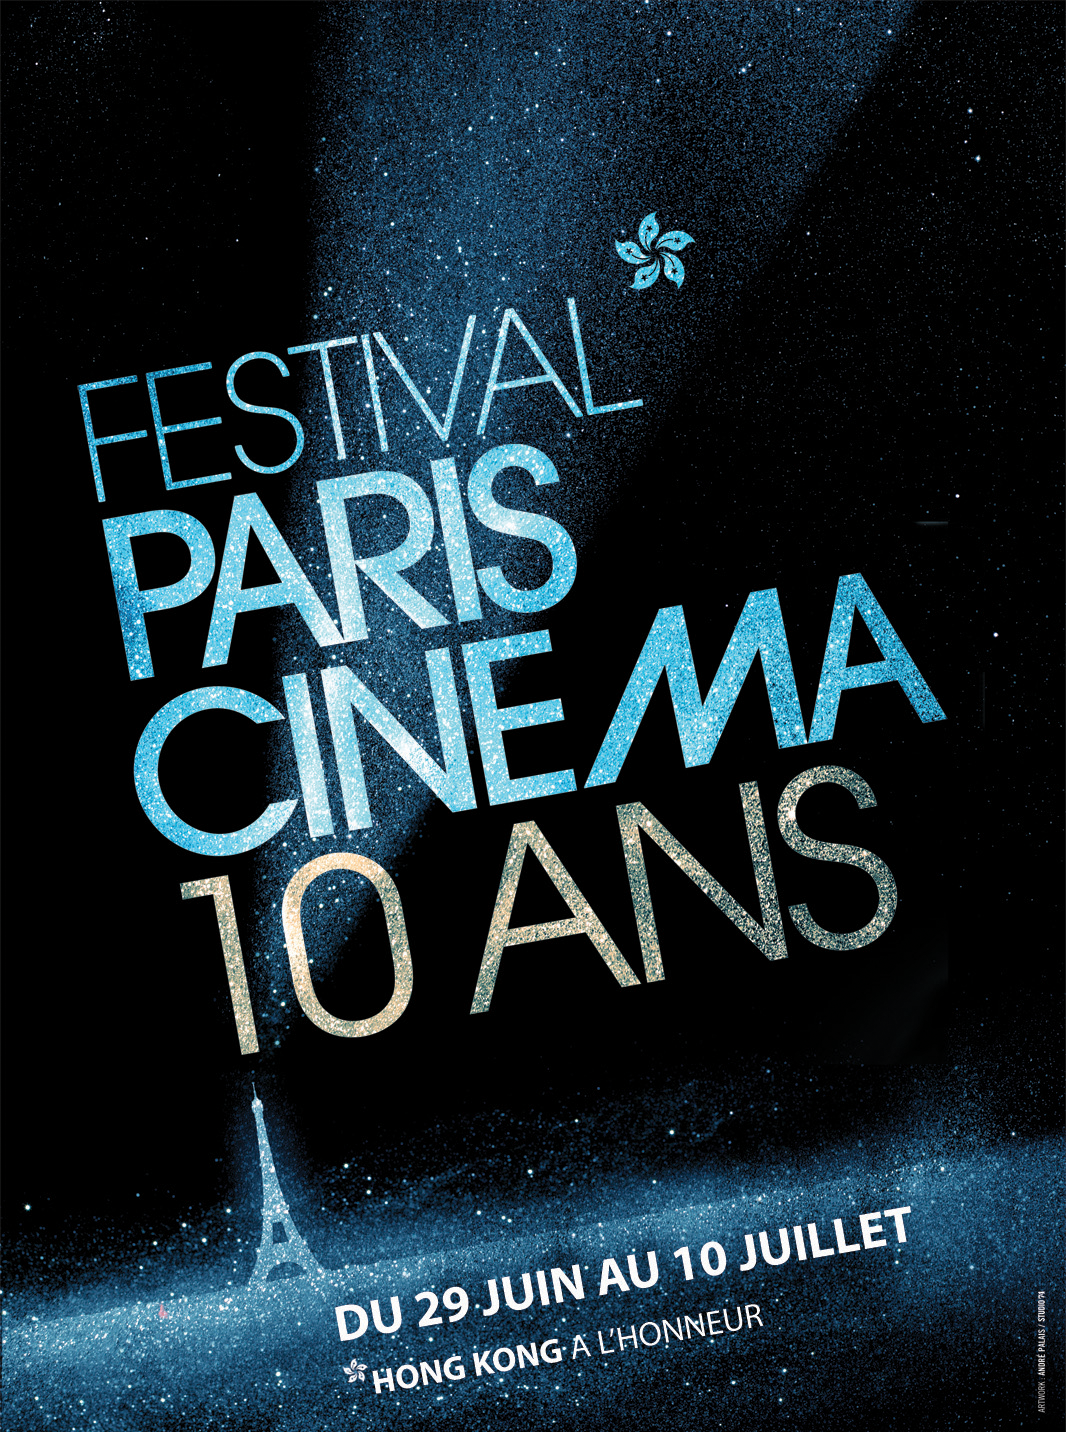 Paris Cinema Festival 52